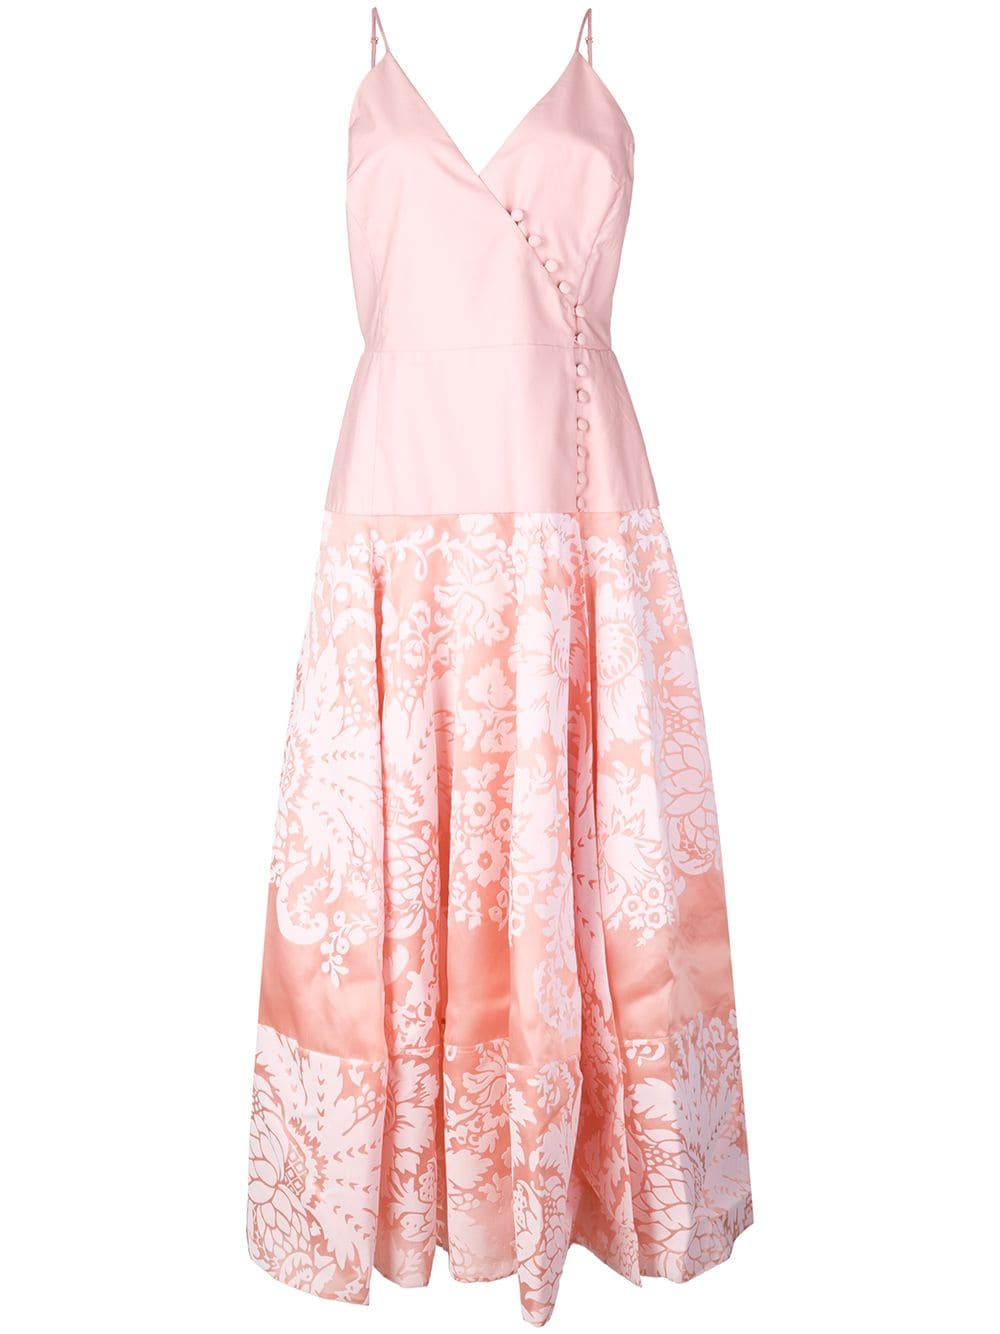 фото Rosie assoulin платье миди из ткани дамаск с запахом